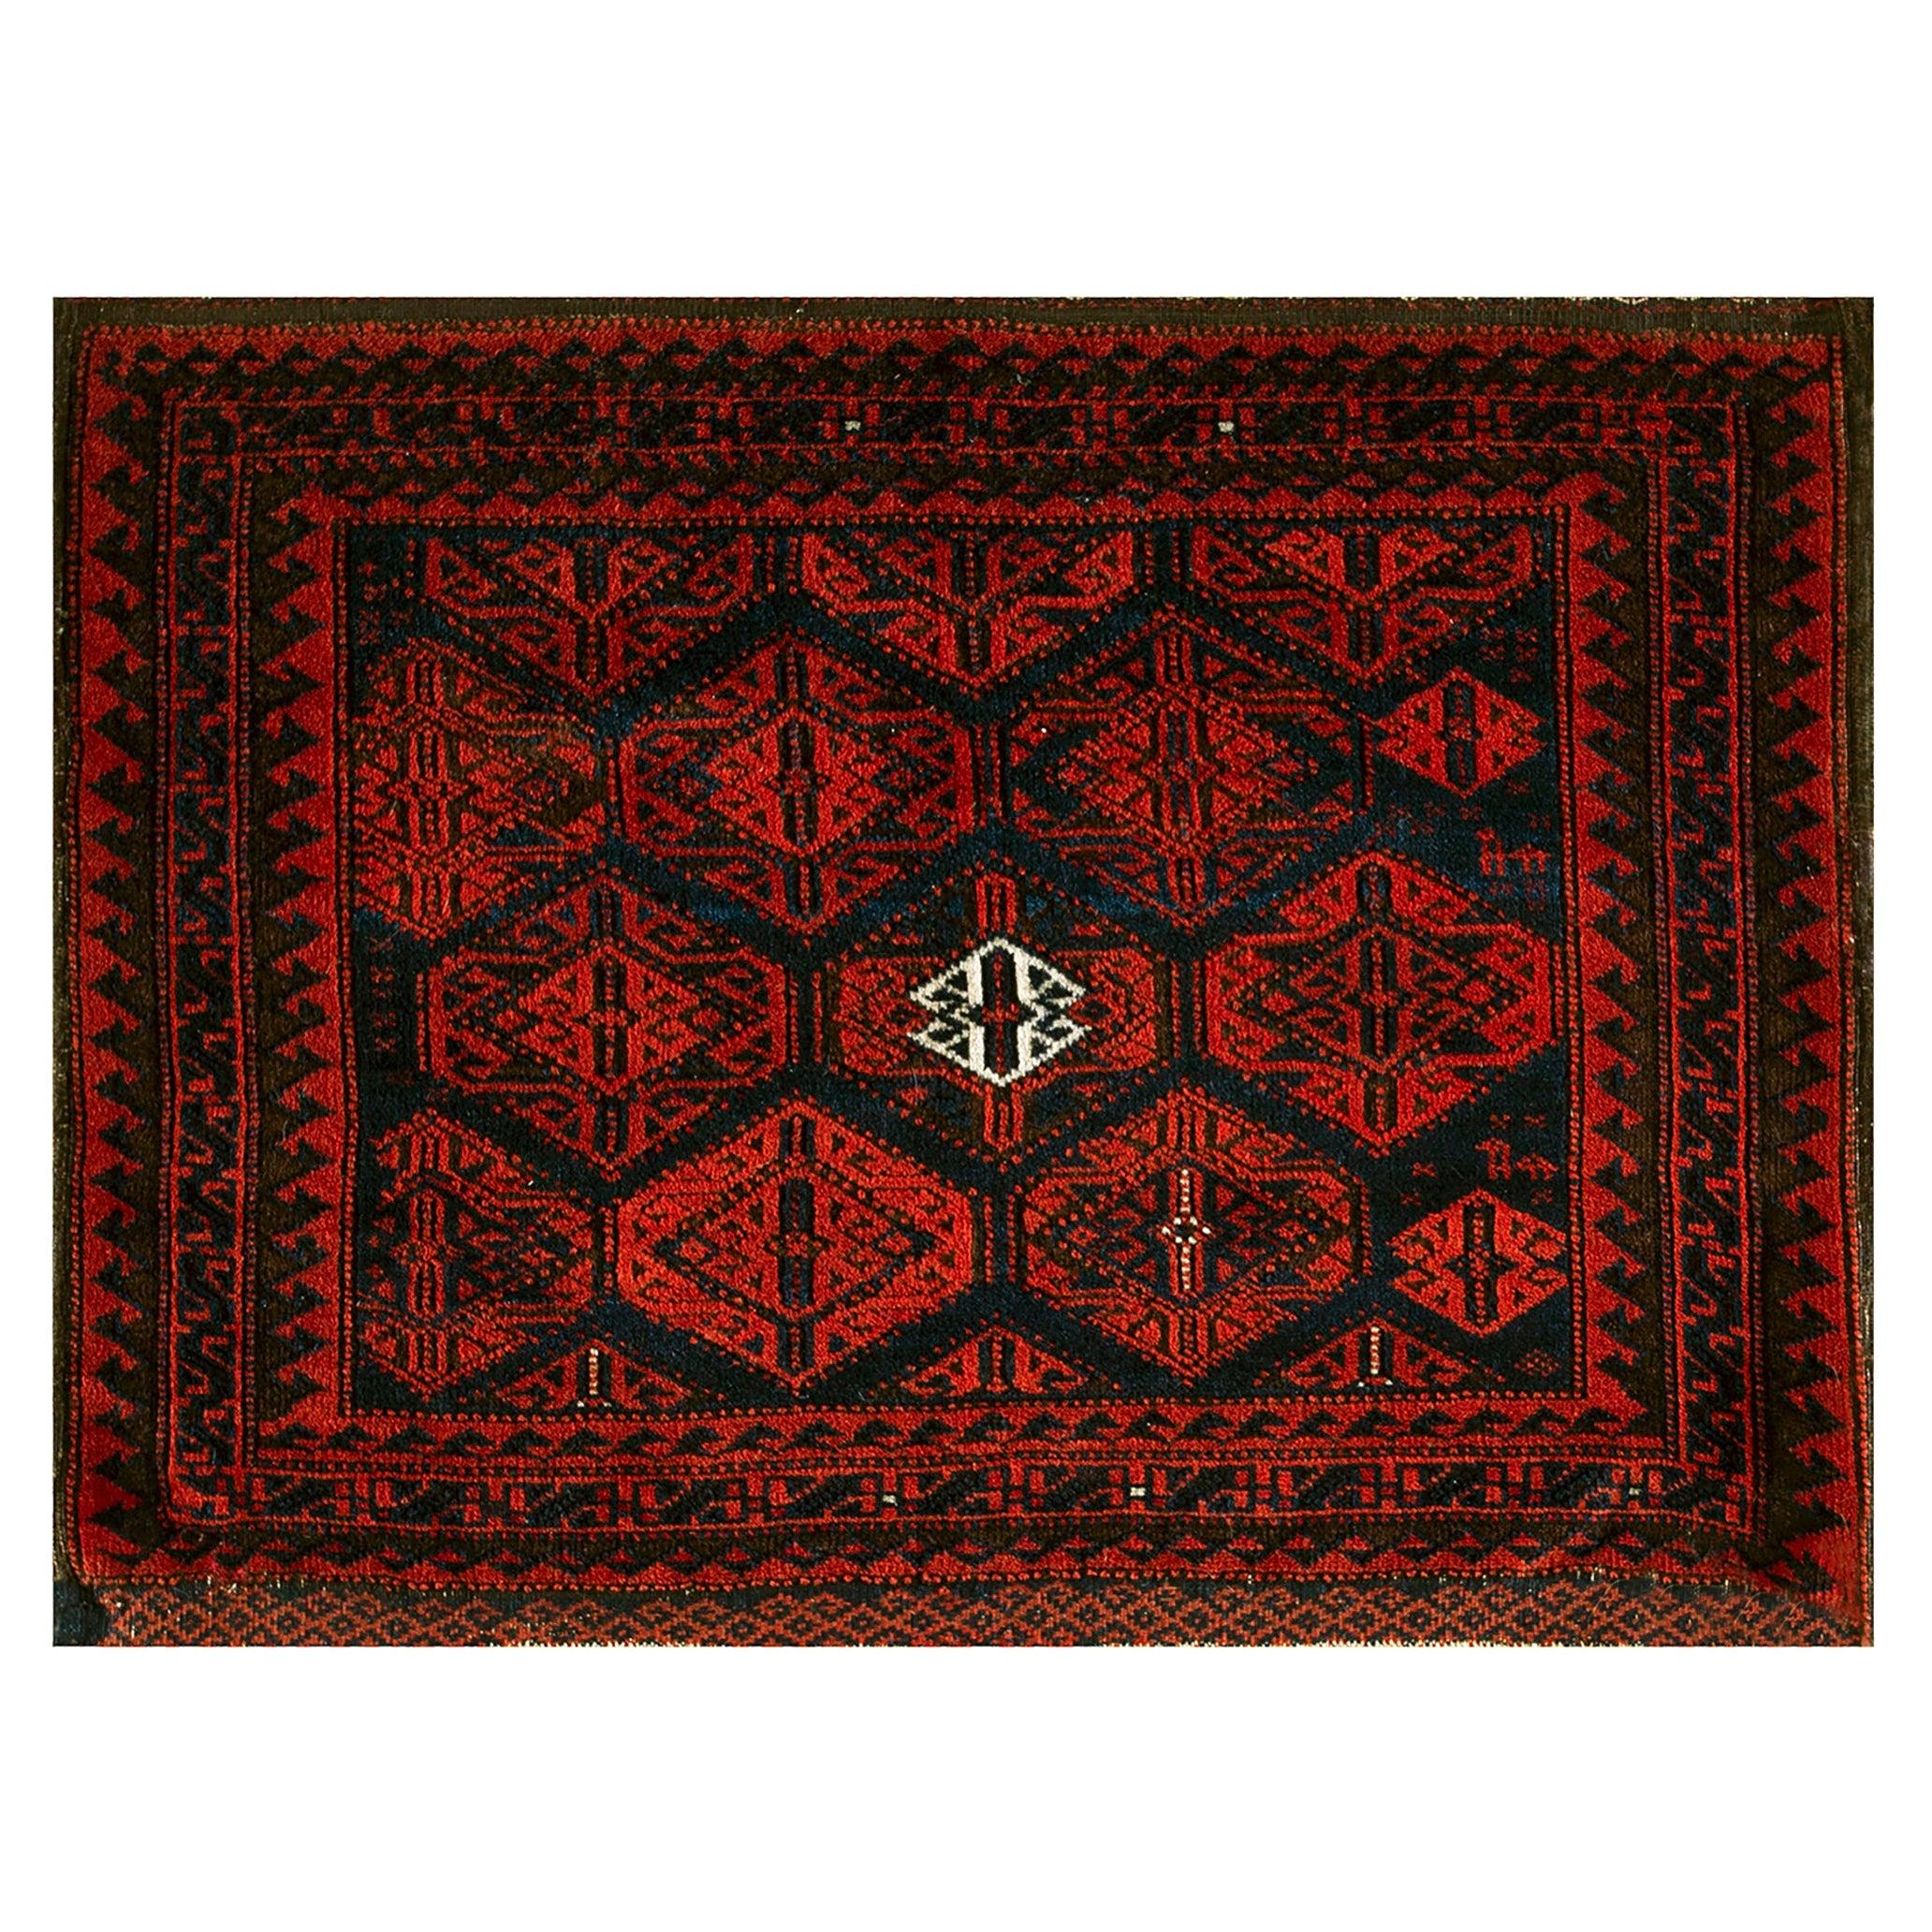 Antique Persian Balouch Rug